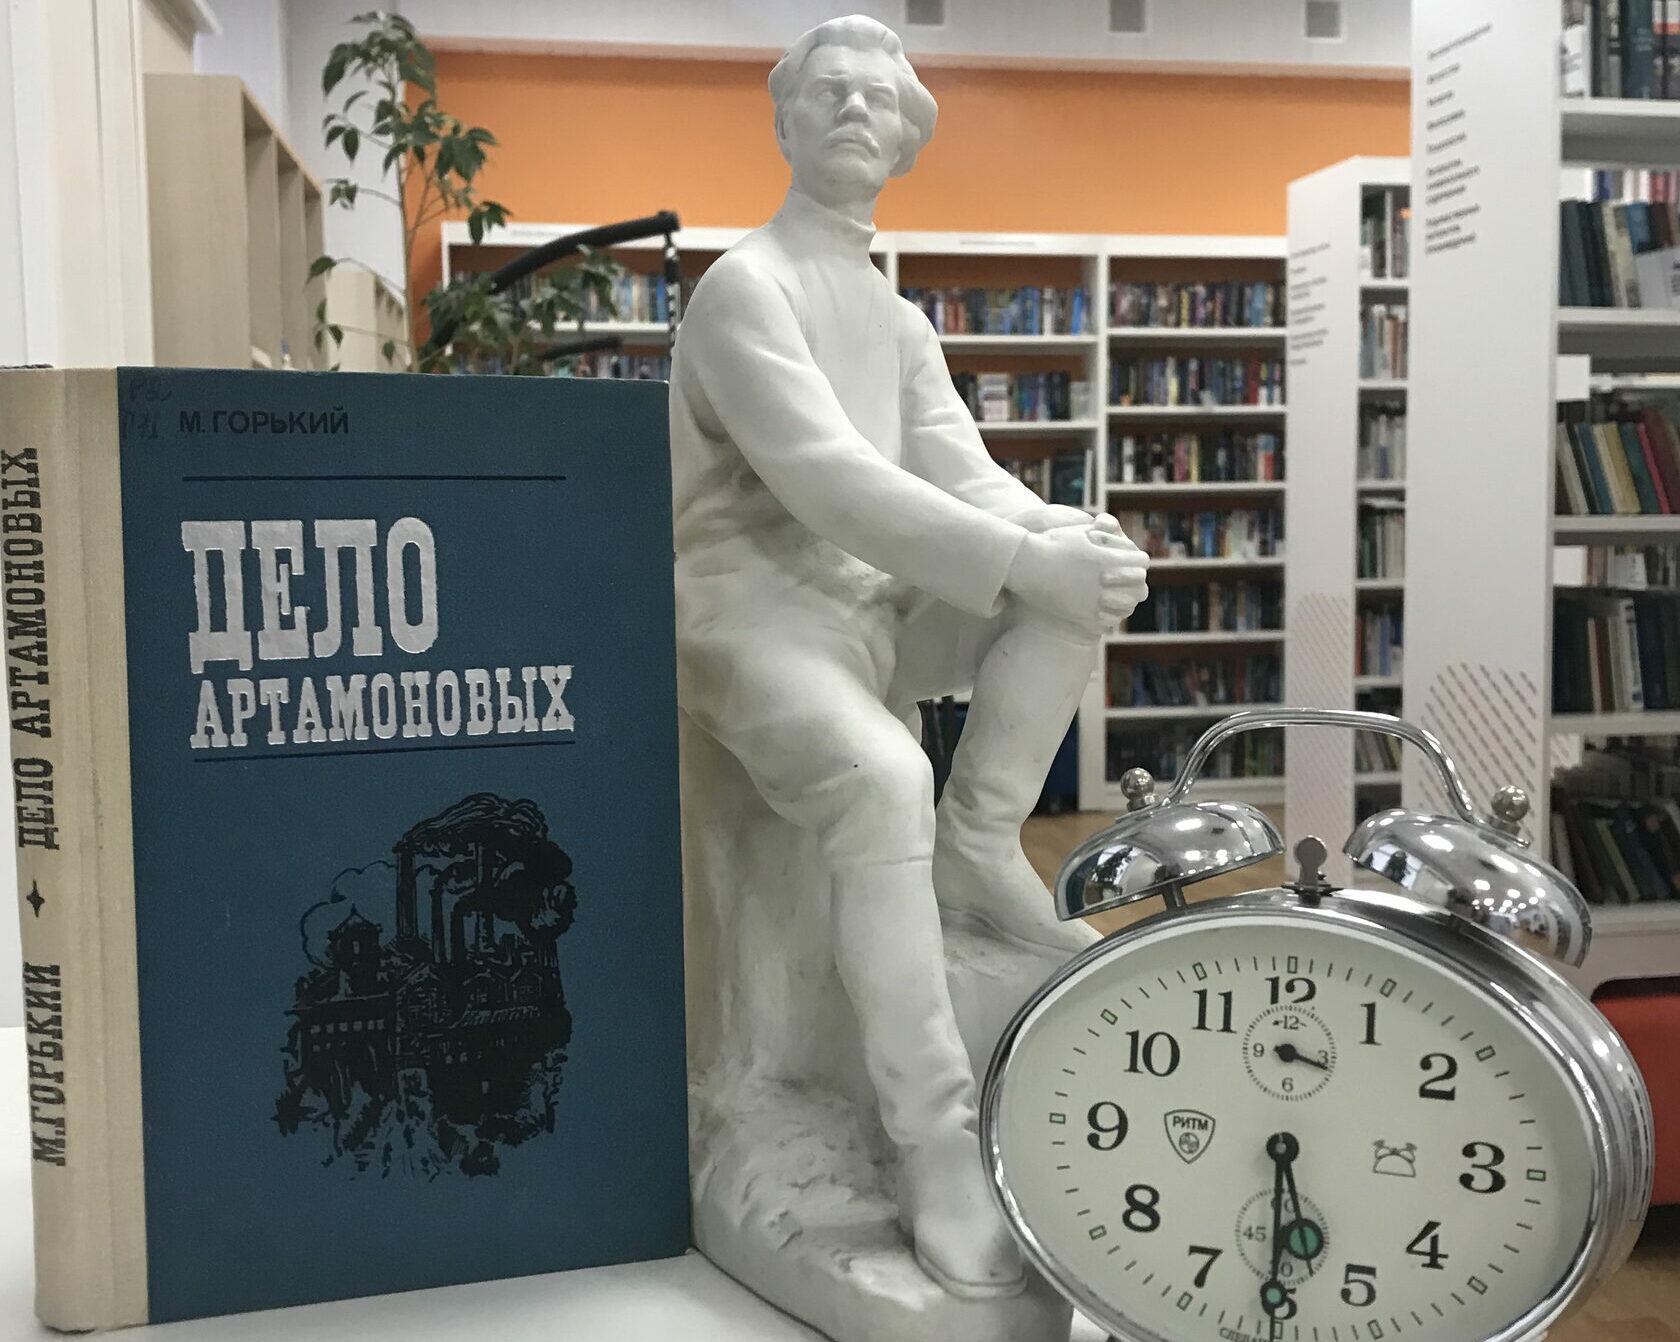 Вечер "Время читать Горького" проведут 1 июня в Савелках, фото